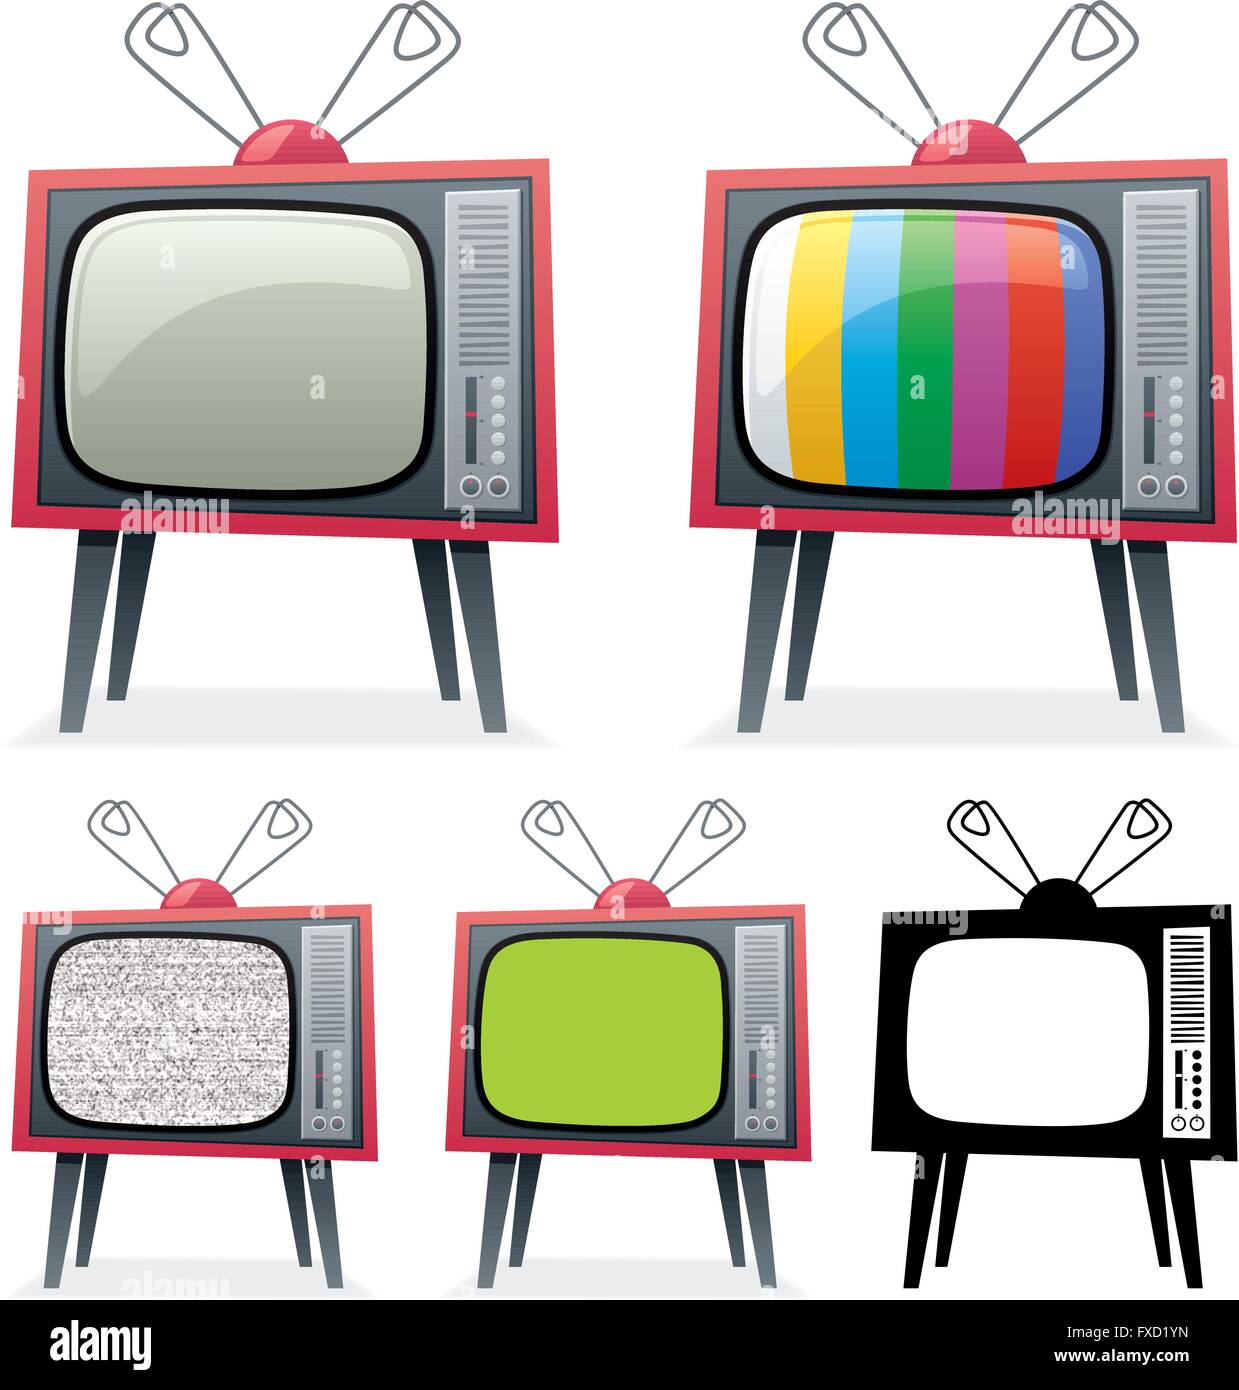 Cartoon-Illustration von Retro-TV in 5 verschiedenen Versionen. Die green-Screen auf dem 4-ten TV können Sie mit Ihrem eigenen Bild ersetzen. Stock Vektor